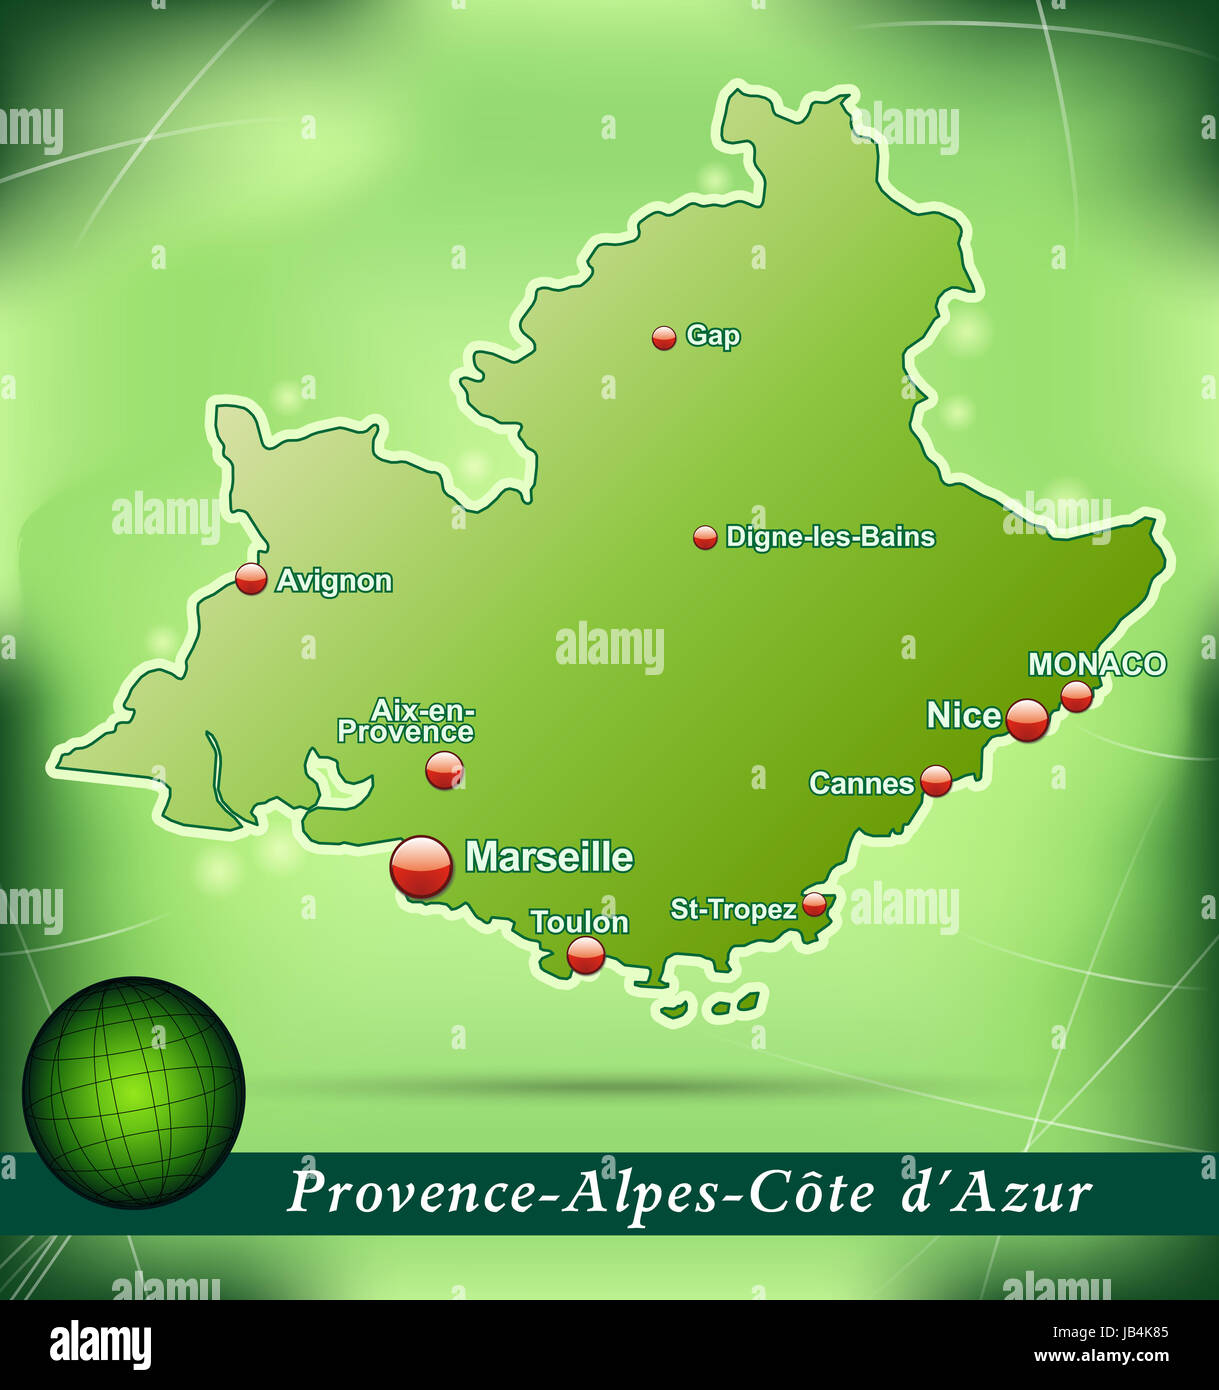 Provence-Alpes-Côte d'Azur en Inselkarte abstraktem Frankreich als mit Hintergrund dans Grün. Durch die Gestaltung ansprechende fügt sich die Karte perfekt dans Ihr Vorhaben ein. Banque D'Images